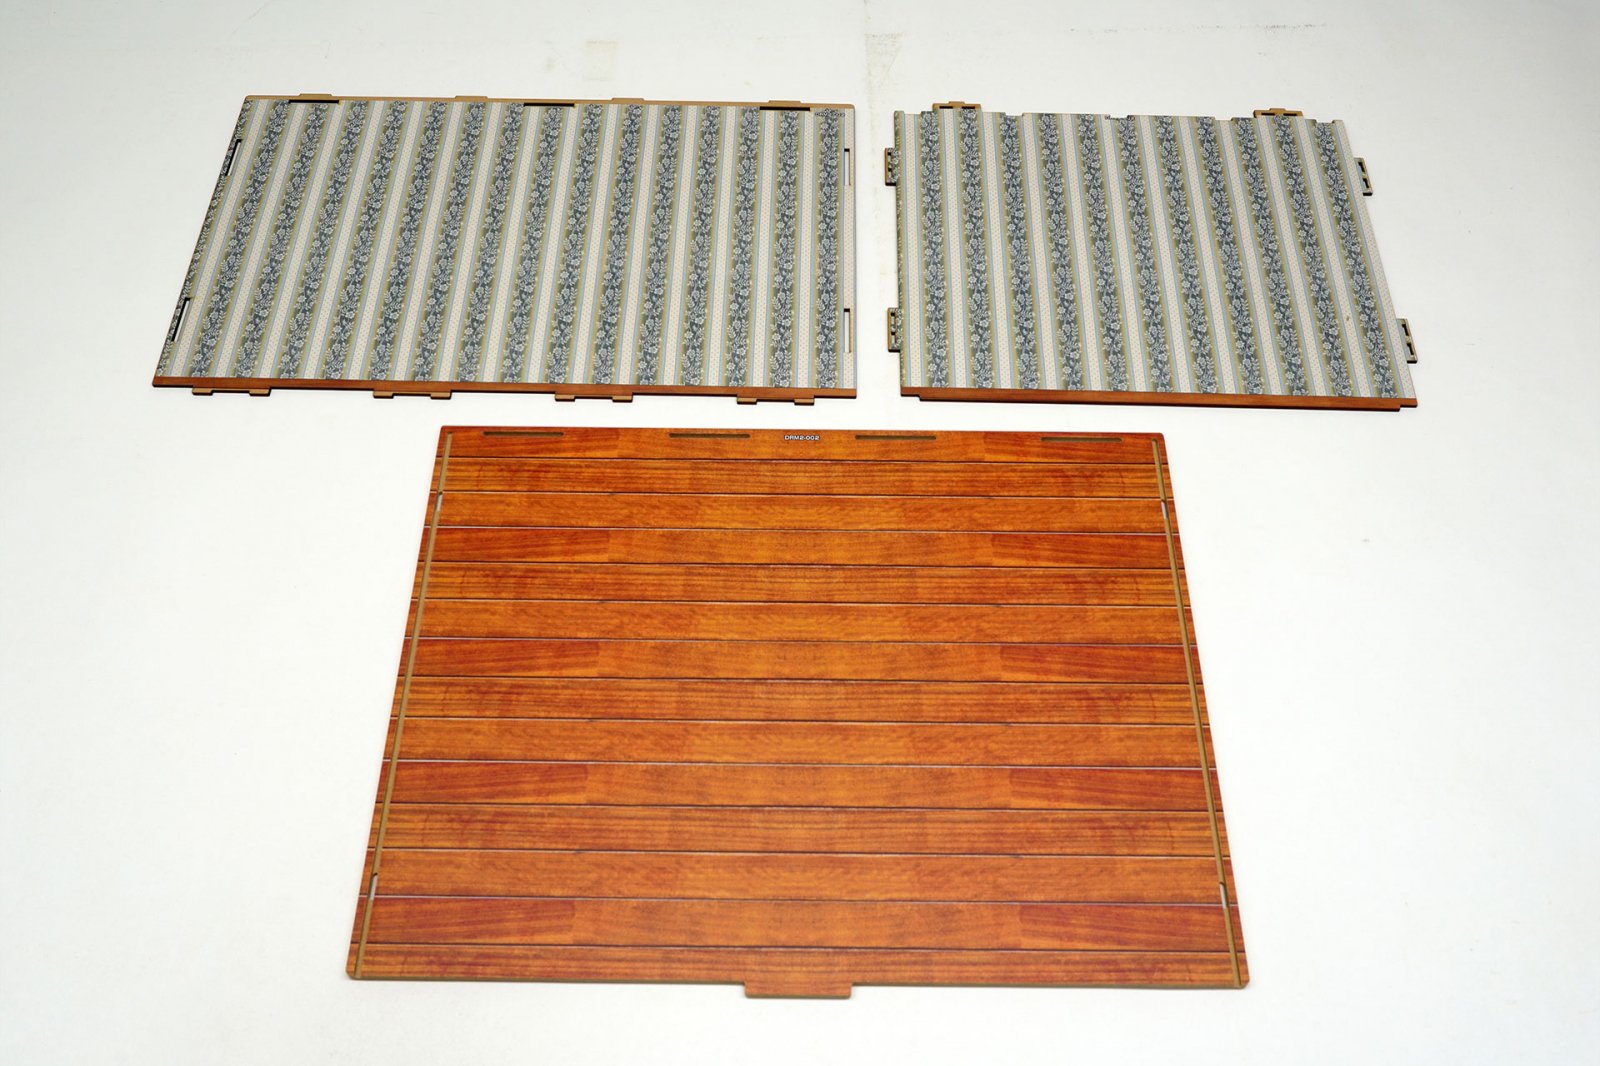 ジオラマルーム2 M-002 洋室セット ダイレクト印刷バージョン